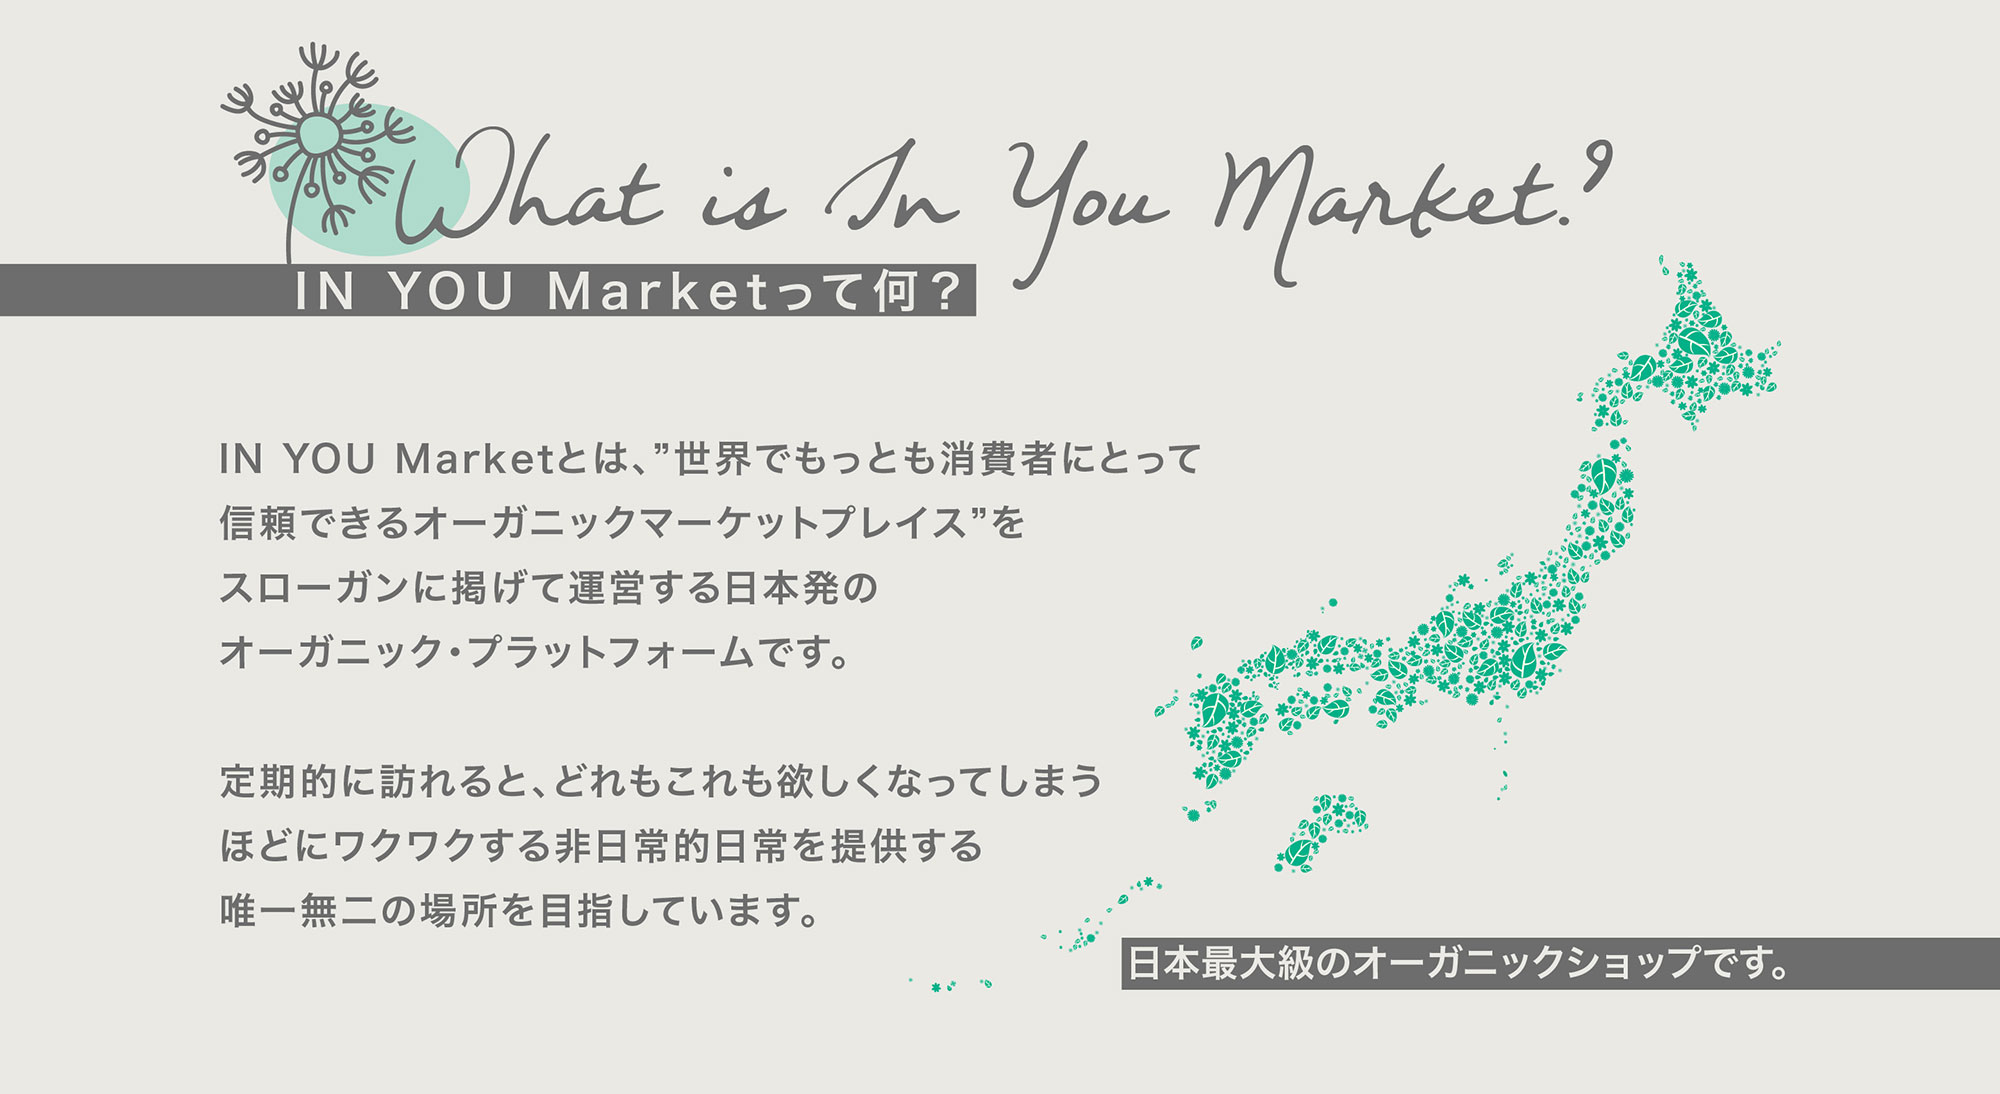 IN YOU Marketって何？ IN YOU Marketとは、”世界でもっとも消費者にとって信頼できるオーガニックマーケットプレイス”をスローガンに掲げて運営する日本発のオーガニック・プラットフォームです。 定期的に訪れると、どれもこれも欲しくなってしまうほどにワクワクする非日常的日常を提供する唯一無二の場所を目指しています。